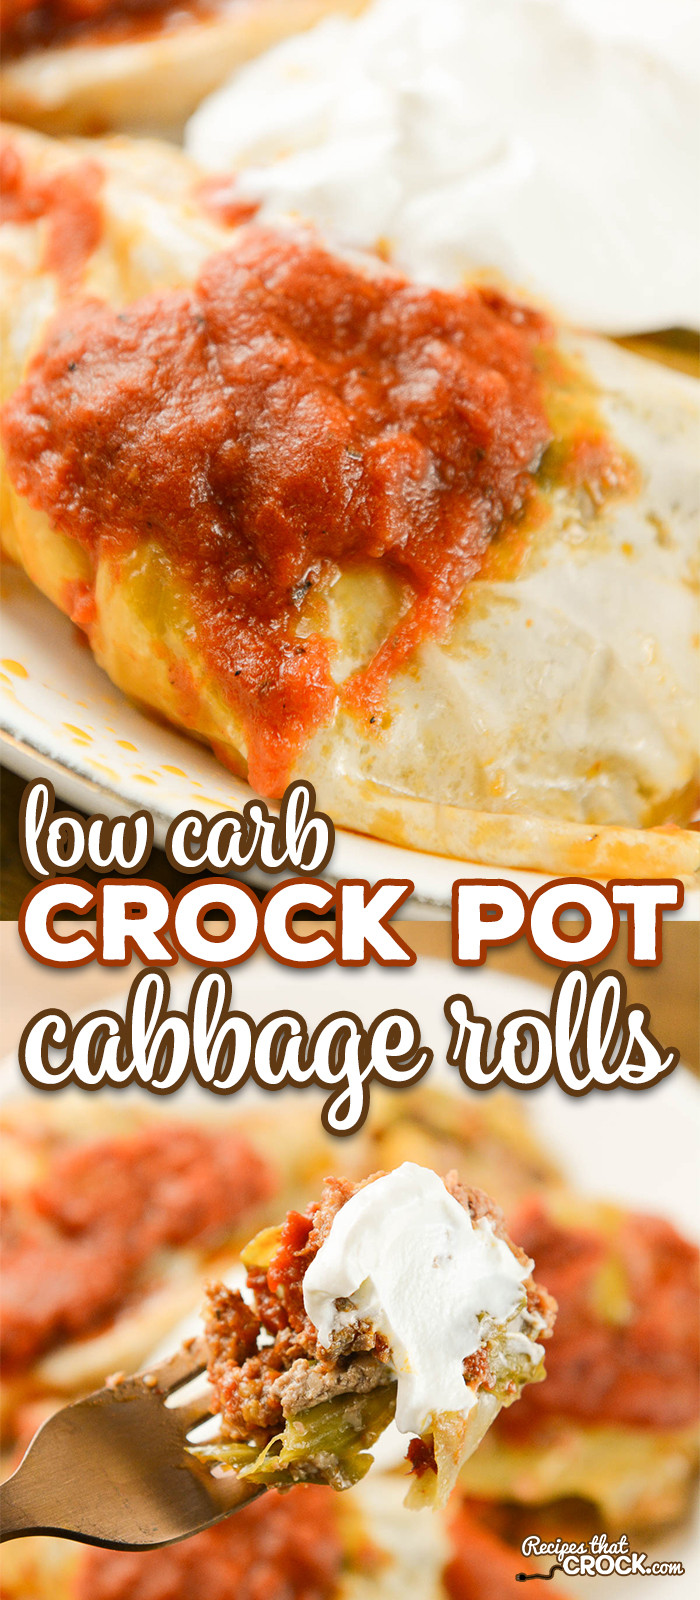 Low Carb Crockpot Recipes
 Crock Pot Cabbage Rolls Recipes That Crock